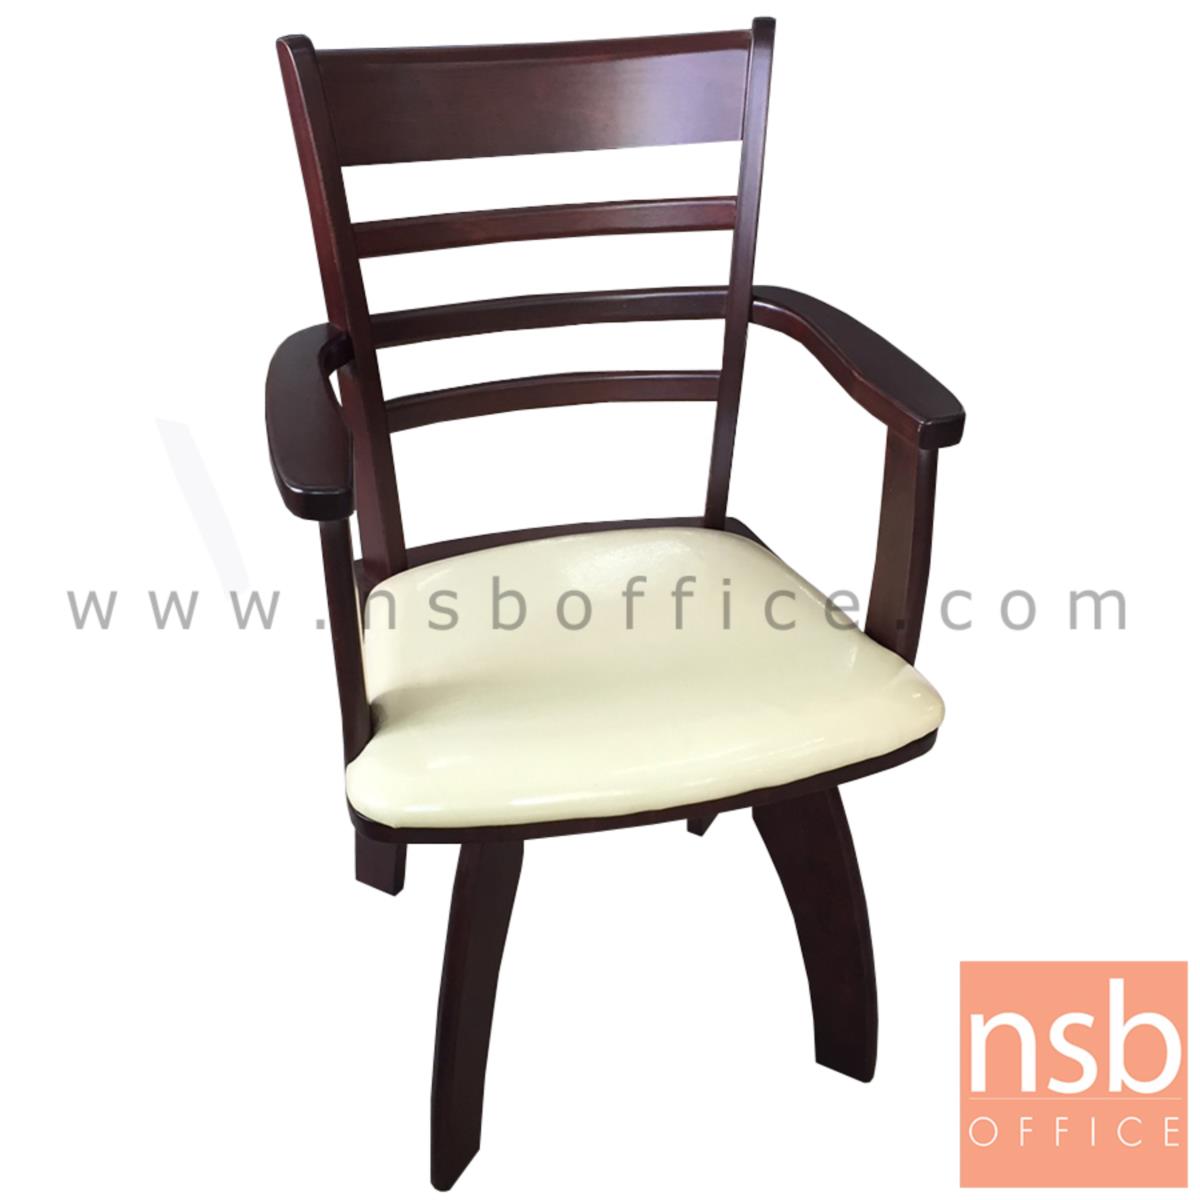 L10A147:เก้าอี้โครงไม้ เบาะหนังเทียม   